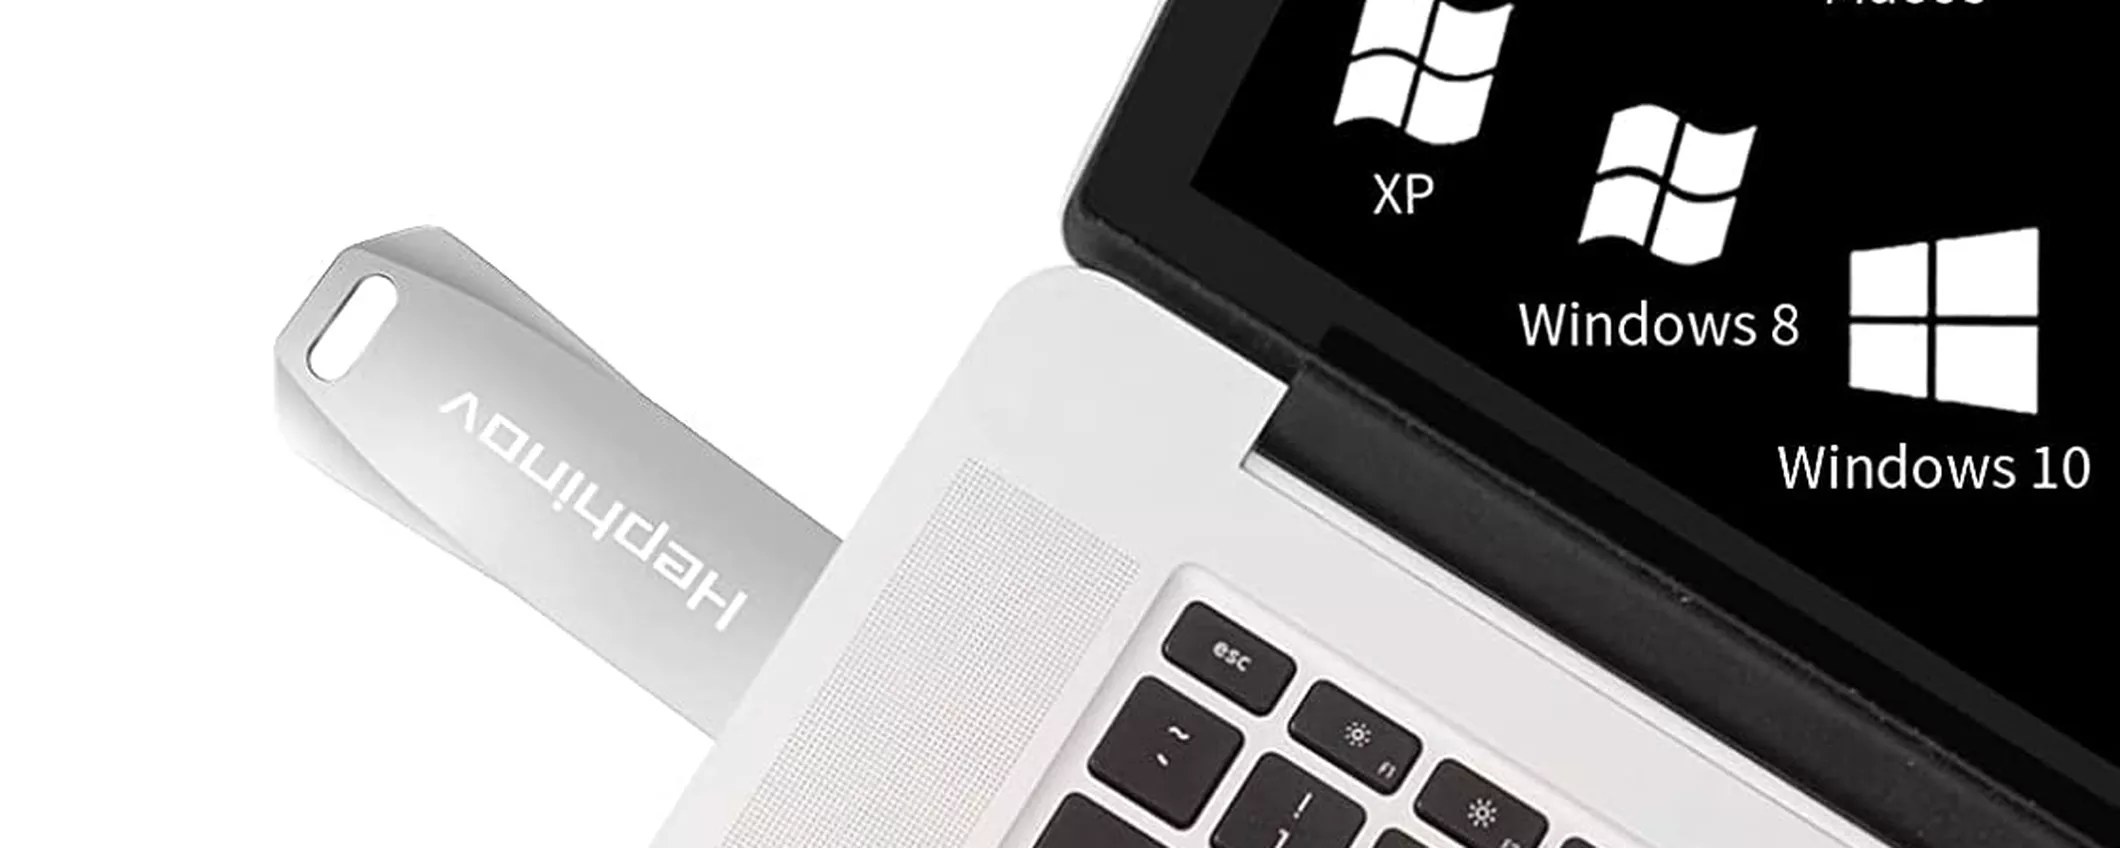 FORTE ed ECONOMICA, la miglior chiavetta USB 32GB in metallo costa 6€